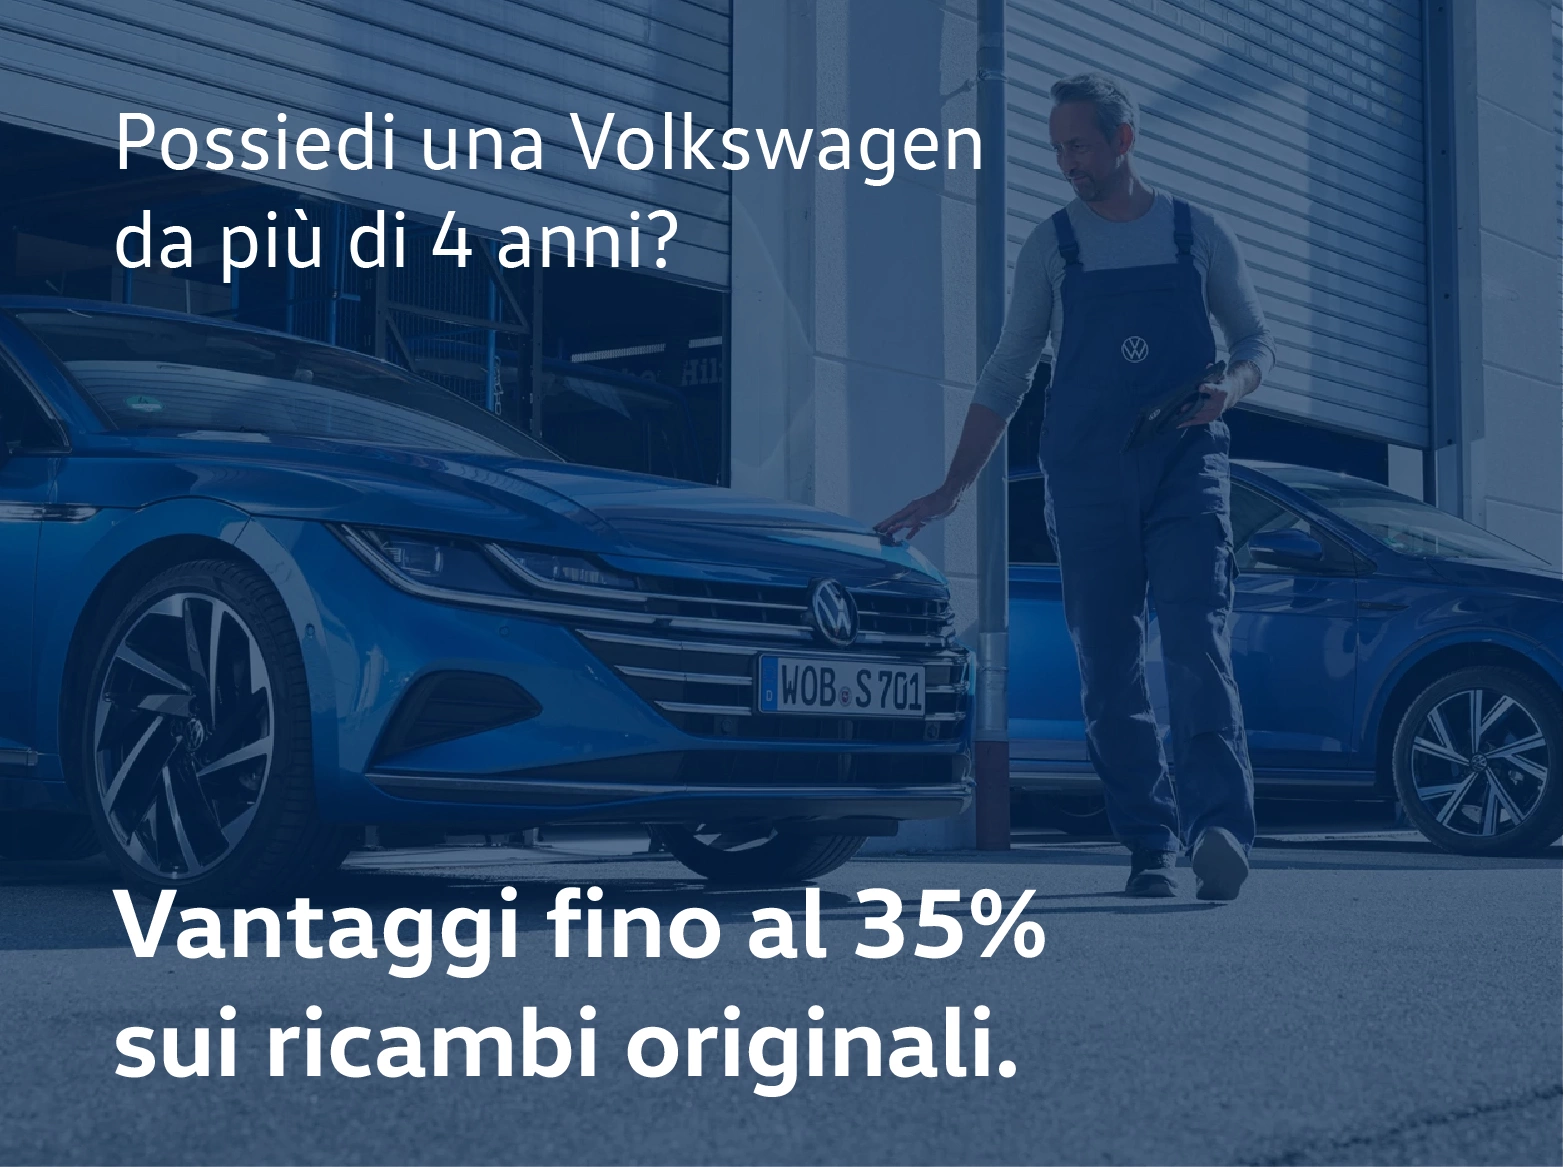 Promozione ricambi originali Volkswagen